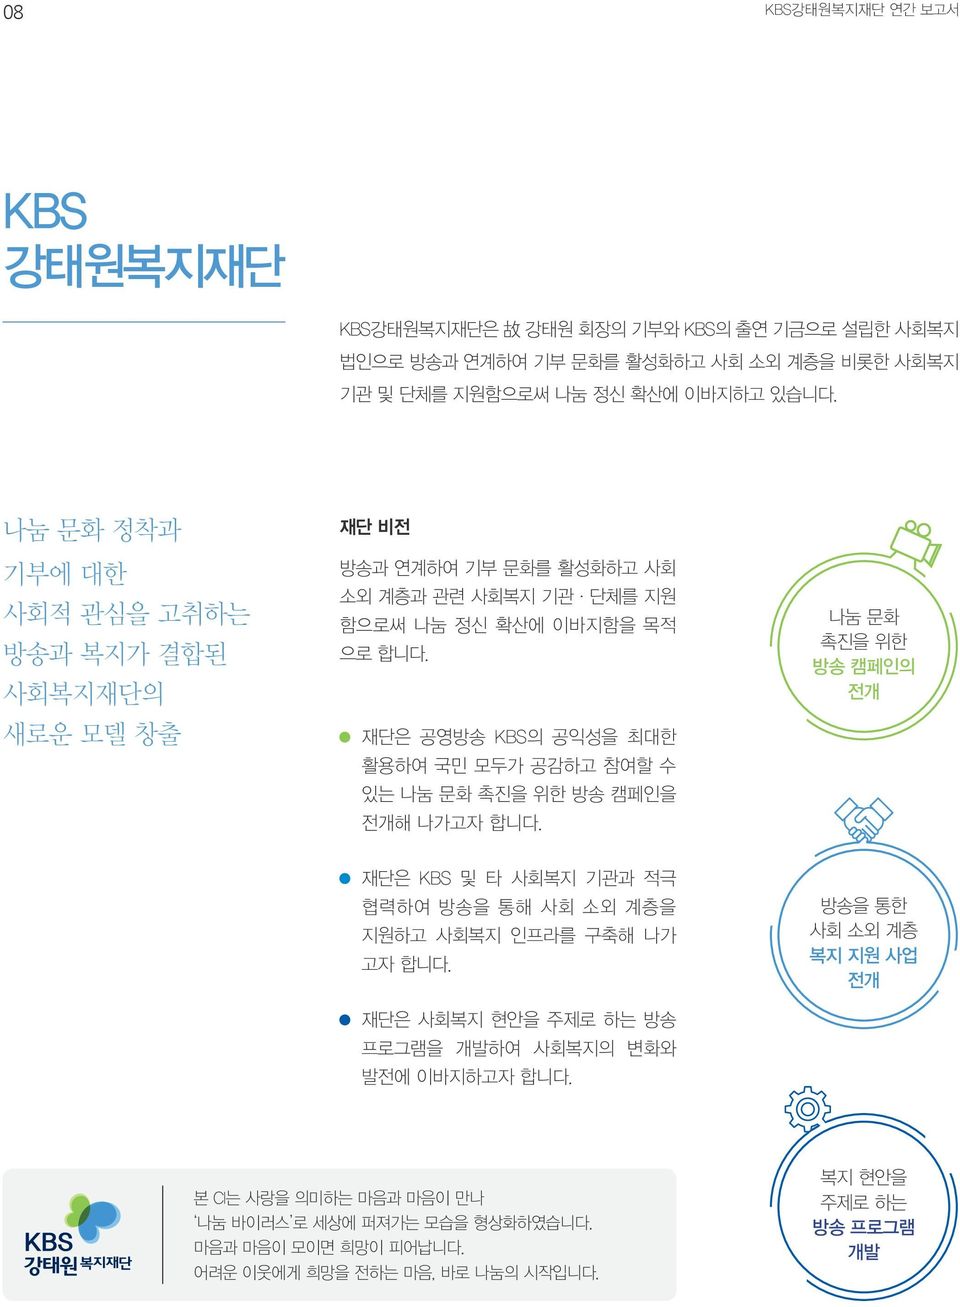 재단은 공영방송 KBS의 공익성을 최대한 활용하여 국민 모두가 공감하고 참여할 수 있는 나눔 문화 촉진을 위한 방송 캠페인을 전개해 나가고자 합니다.